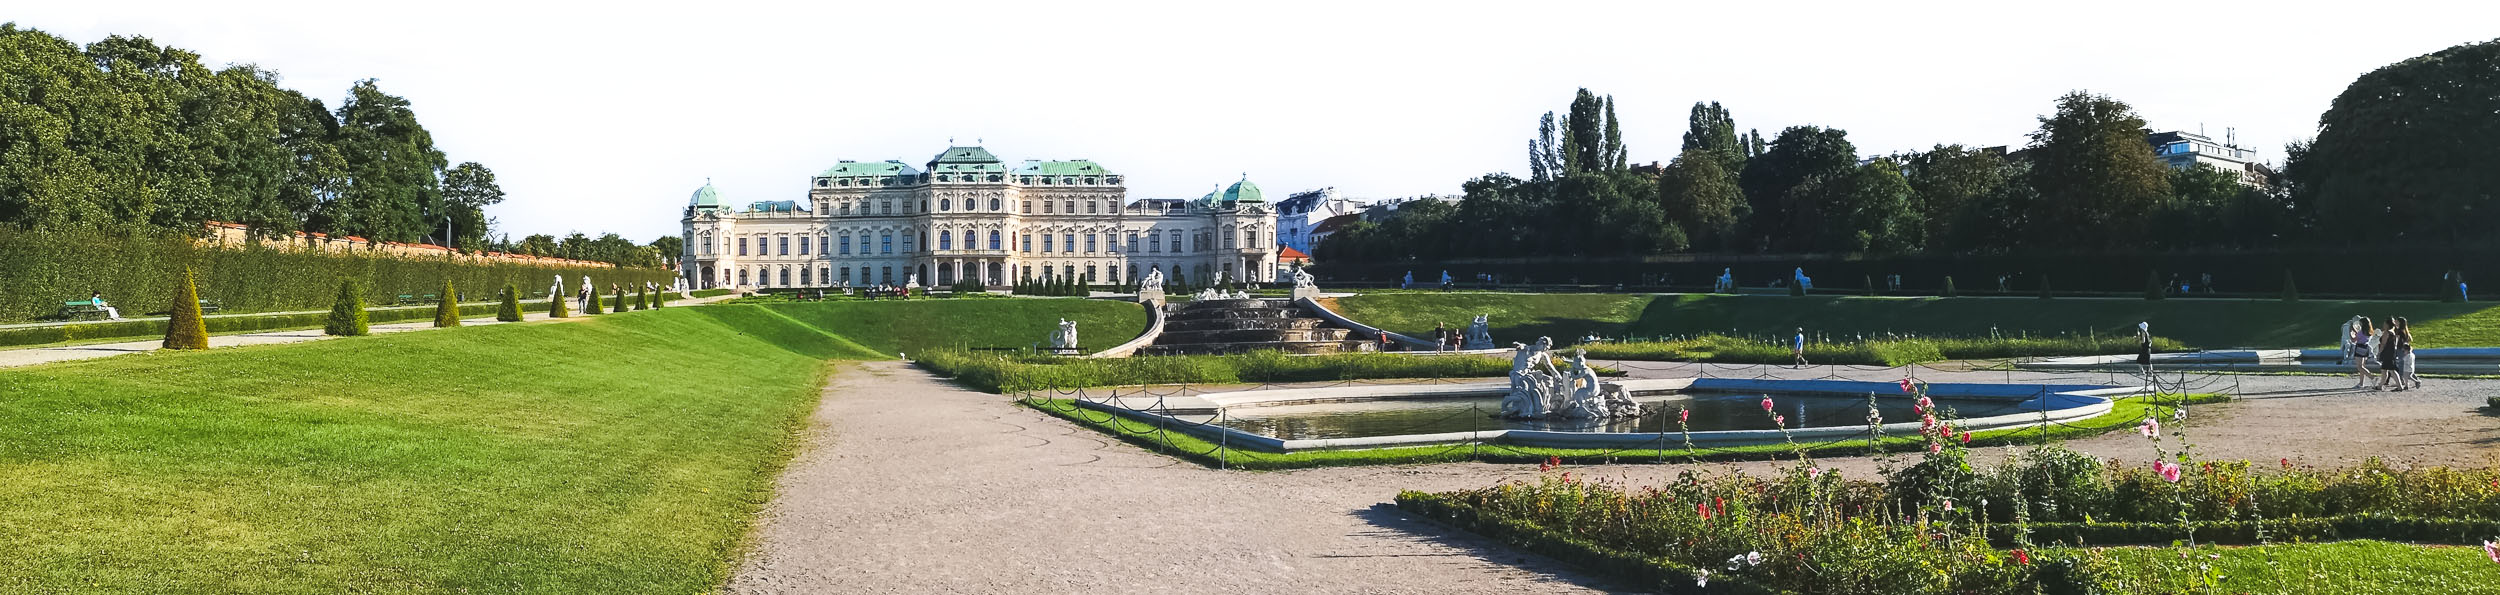 Belvedere Palace Complex in Landstrasse, Vienna 2